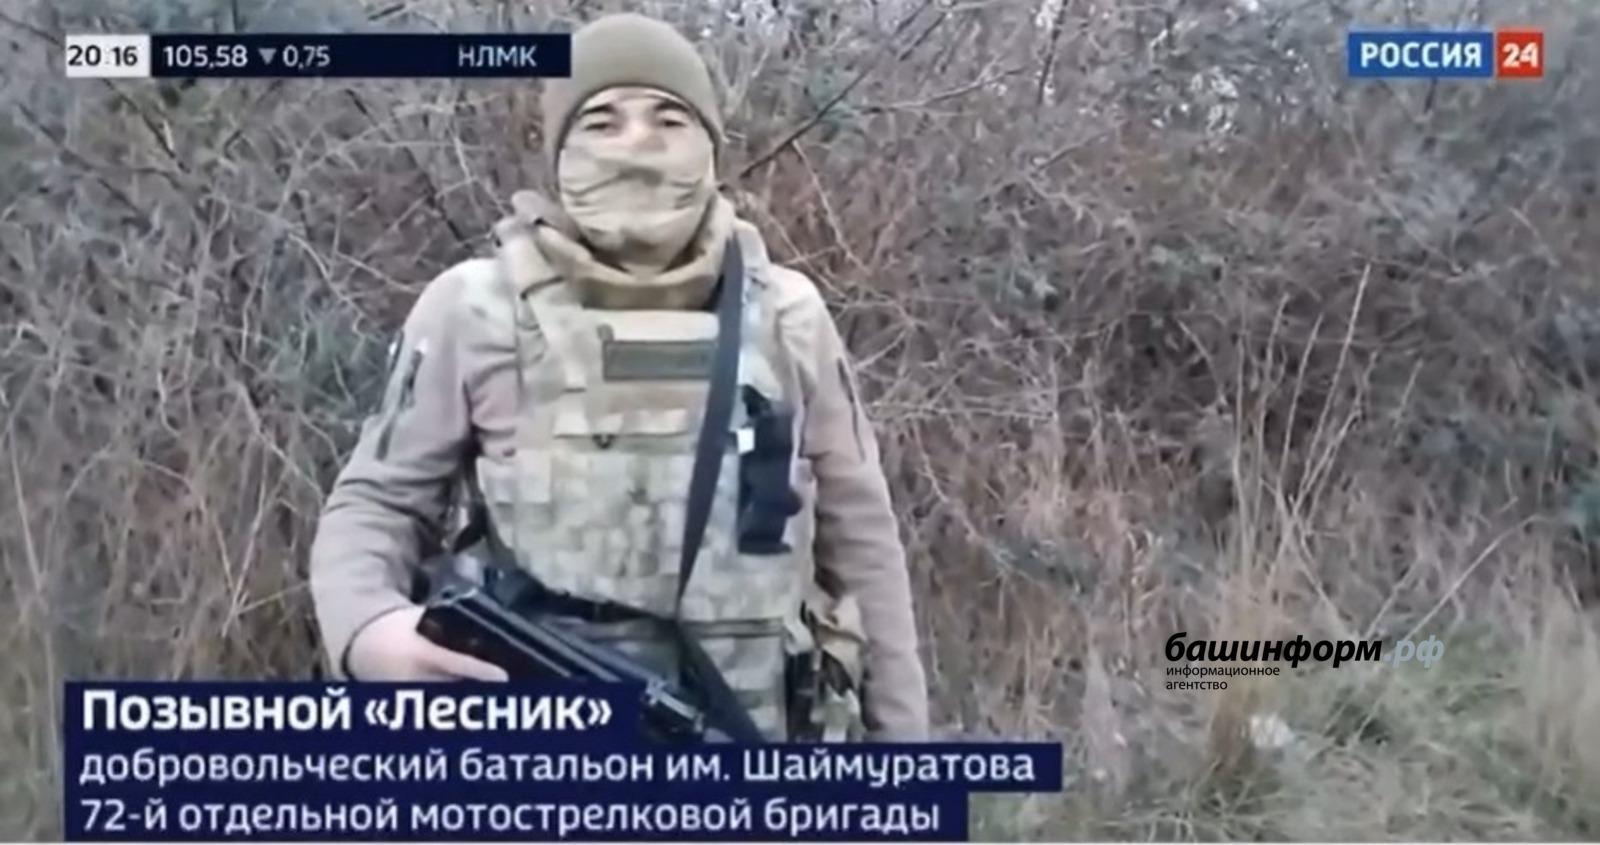 Боец башкирского батальона имени Шаймуратова рассказал о слабых местах ВСУ